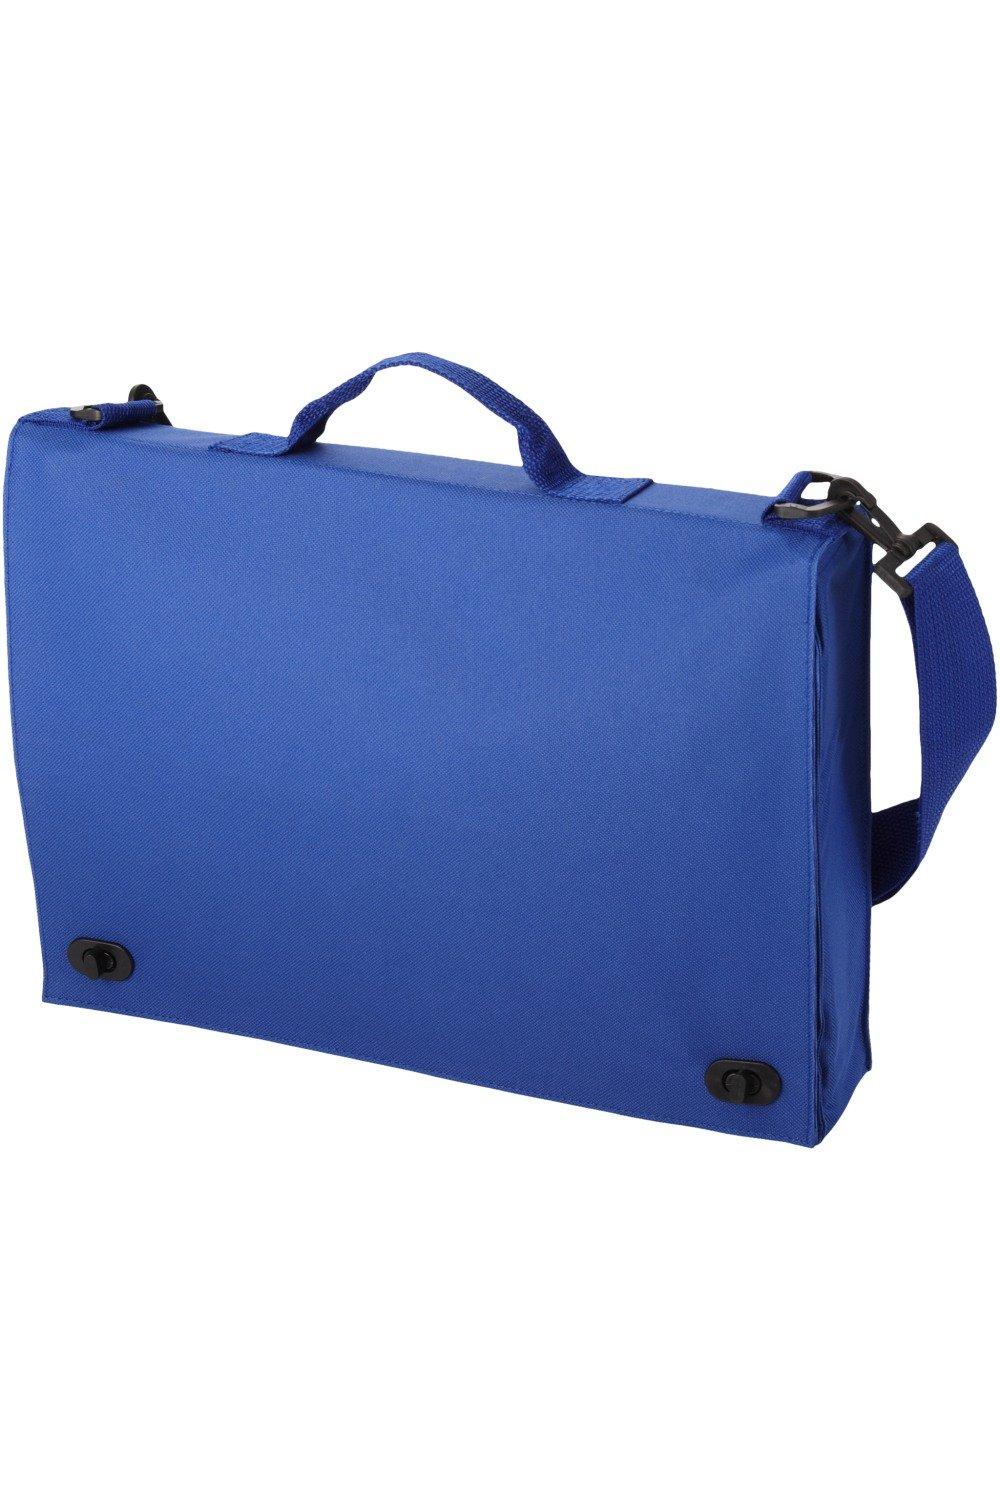 Сумка для конференций Санта-Фе Bullet, синий сумка staff сумка для документов manager